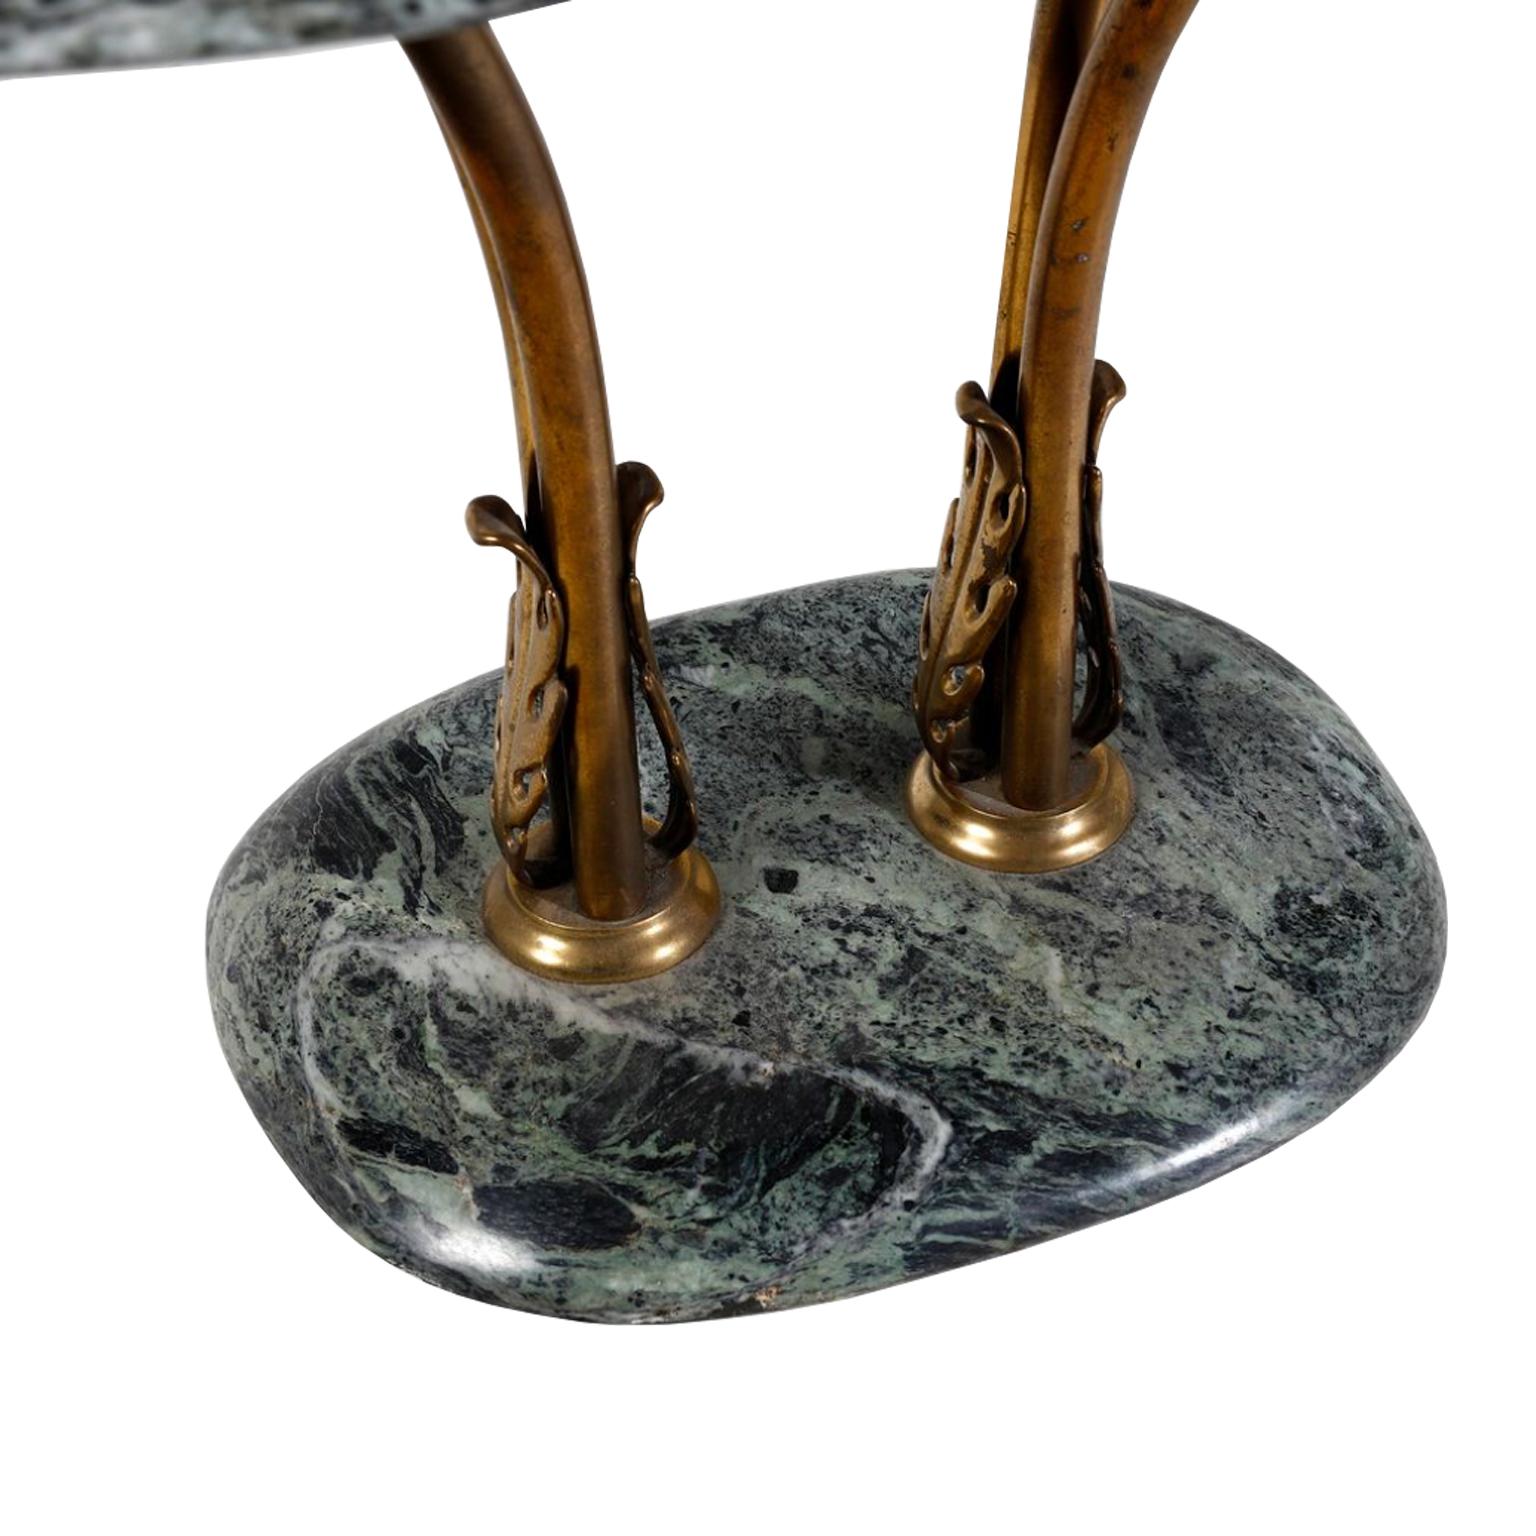 Ovaler Beistelltisch Vintage mit Platte und Sockel aus grünem Marmor.  Dieses Möbelstück hat bronzefarbene Metallbeine, die auf beiden Seiten ein stilisiertes Blattmotiv hervorheben.  Die Oberseite der Beine wölbt sich übermäßig, um die ovale